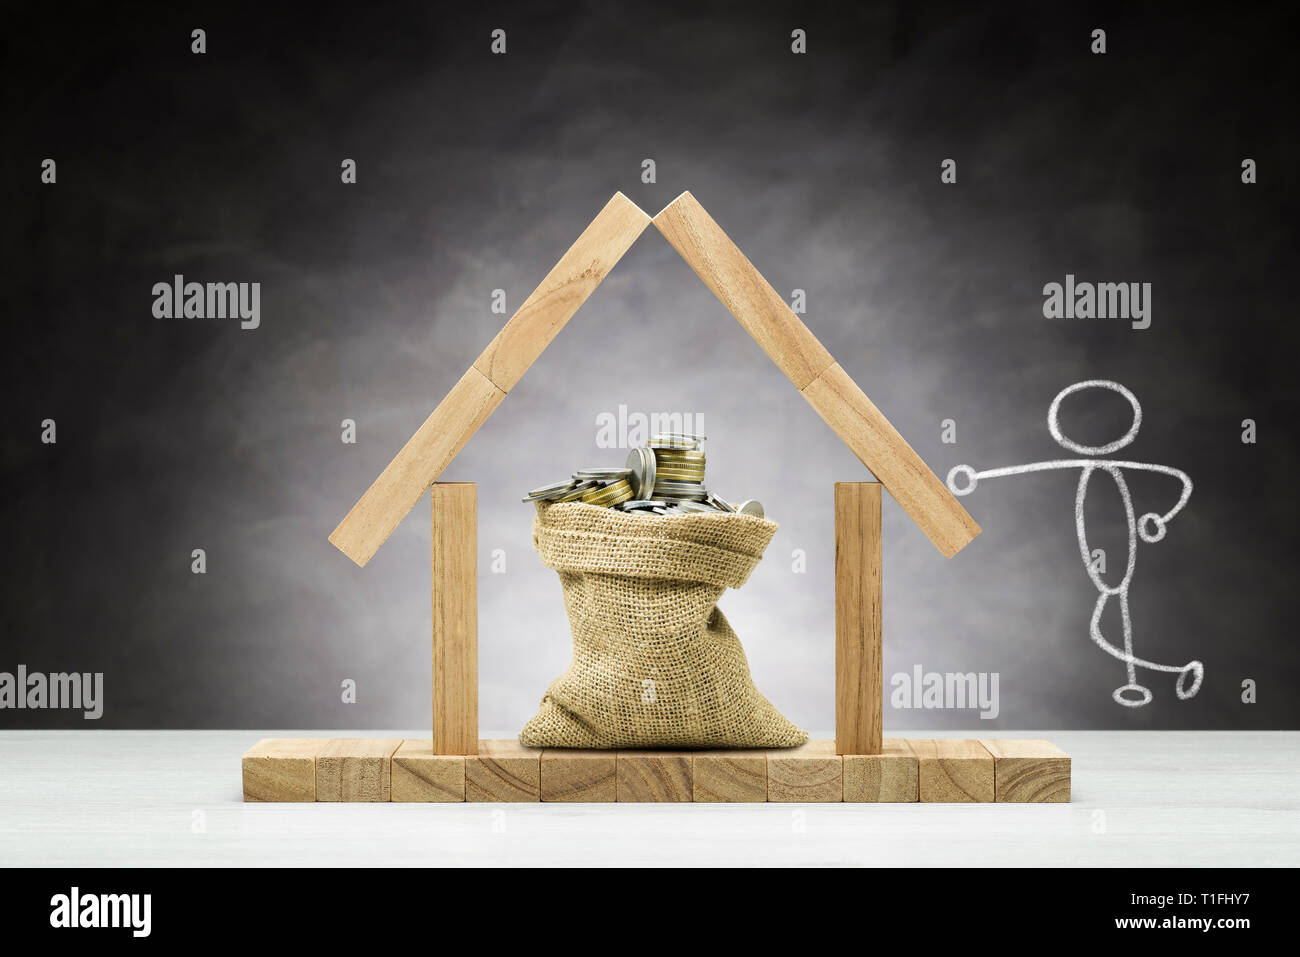 Konzept des Schutzes, Holzhaus auf grauem Hintergrund mit Beutel voller Münzen unter dem Dach. Stockfoto